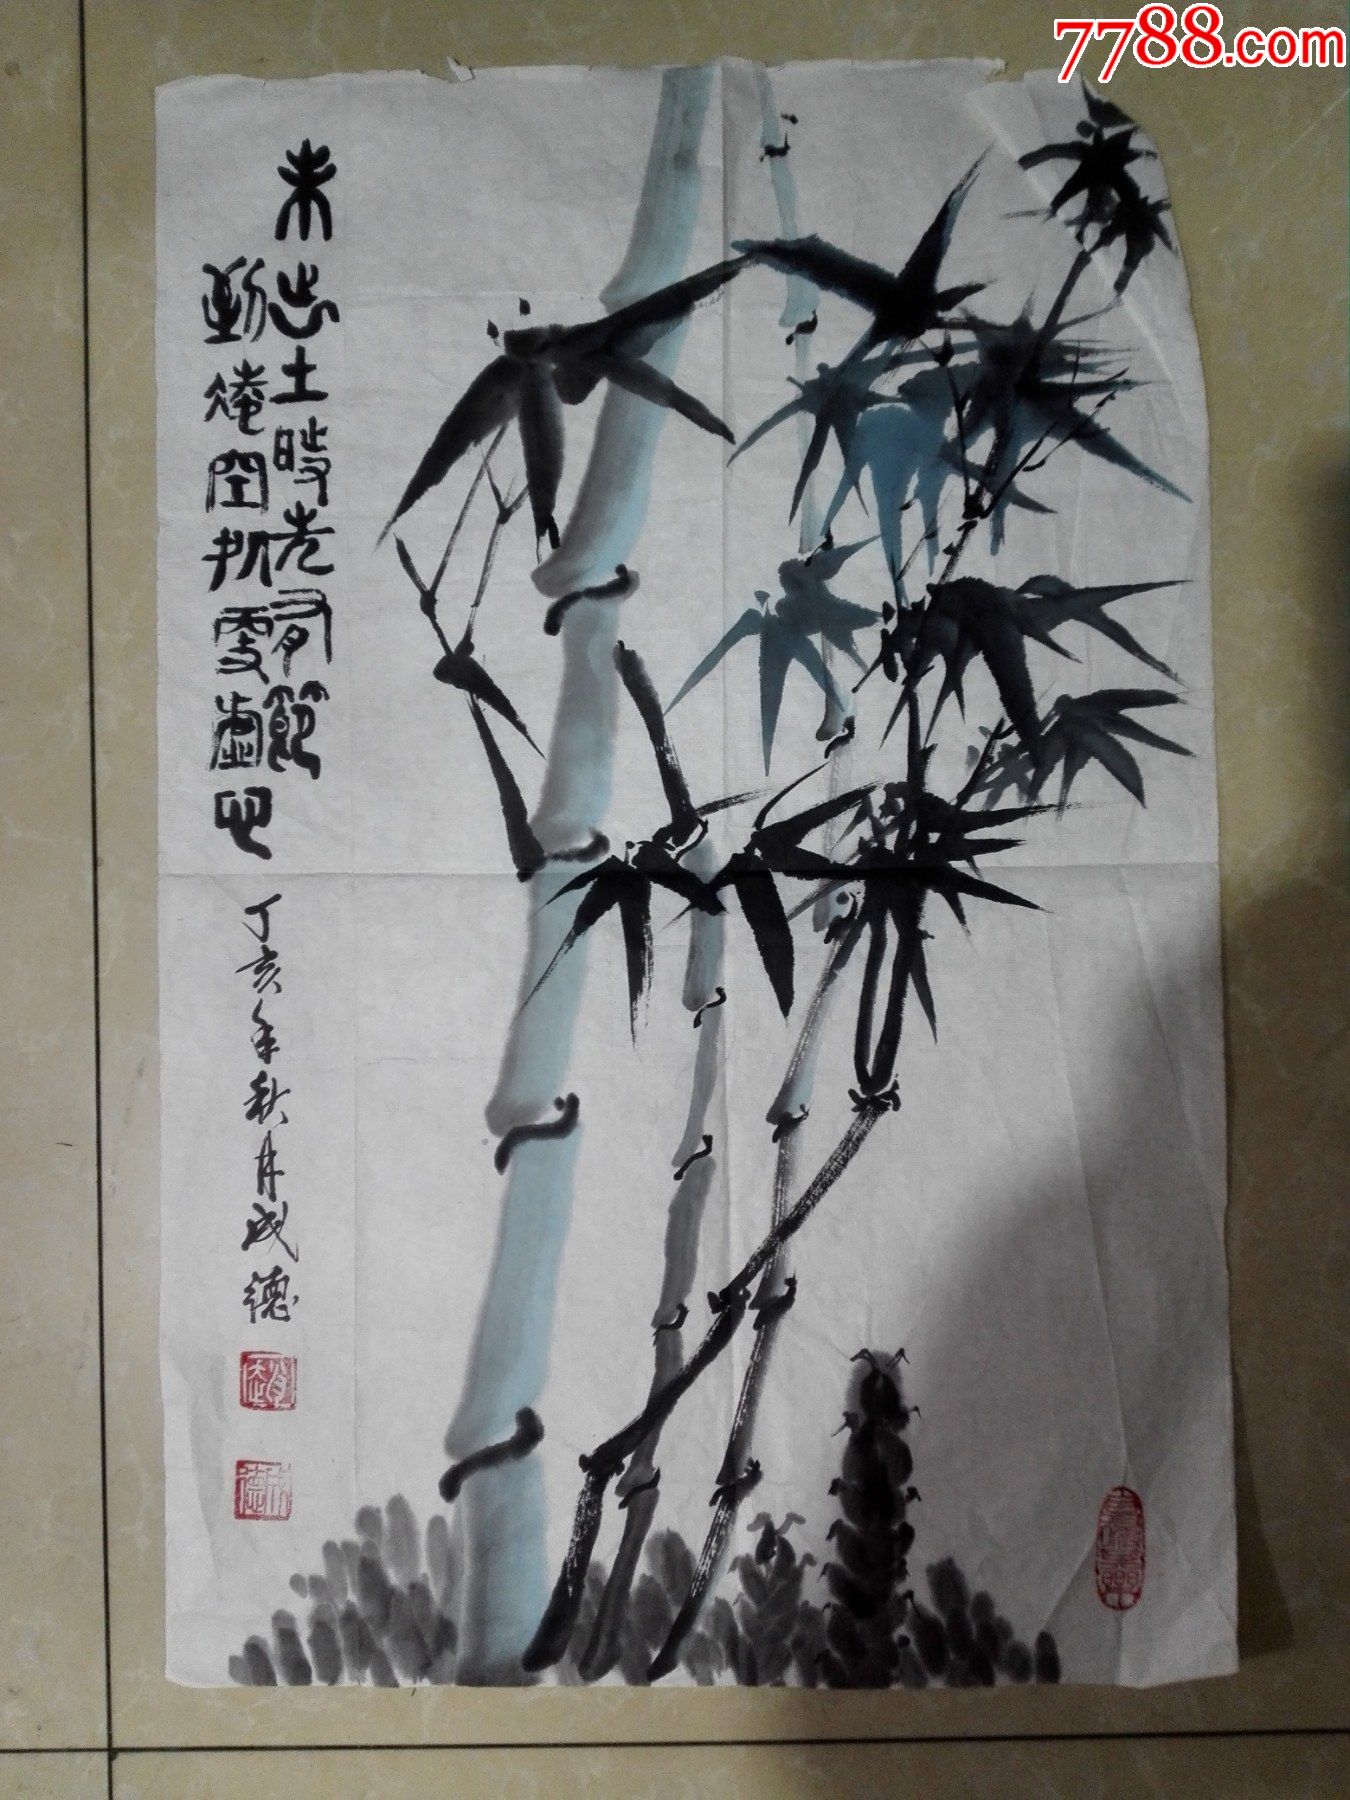 90年代老教授中国画竹子(纯手绘,非印刷)原画原稿_价格20元【红色纸品